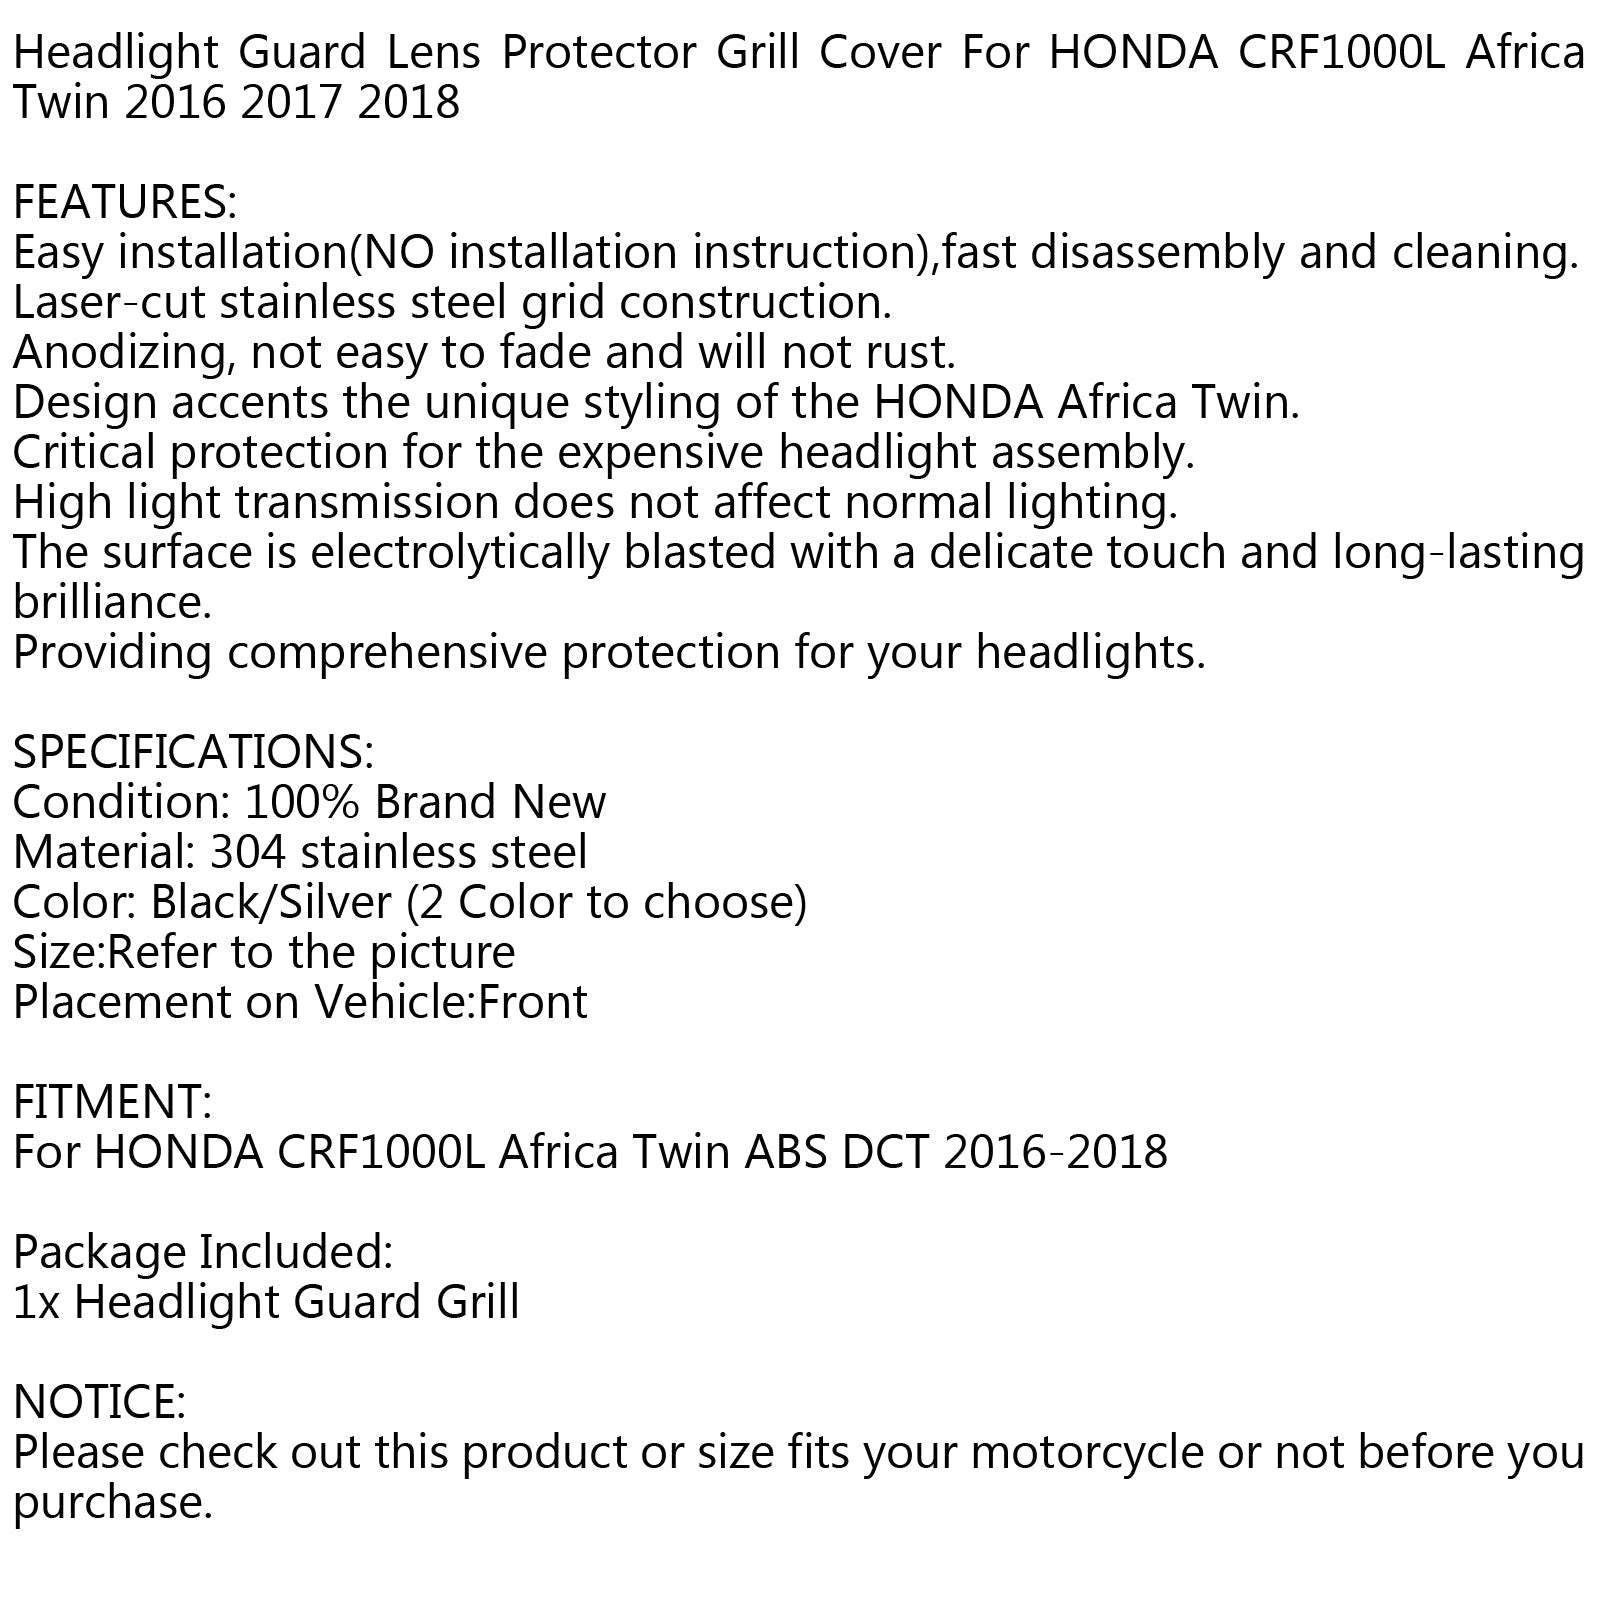 Protecteur de grille de protection de phare pour HONDA CRF1000L AFRICA TWIN 2016-2018 générique